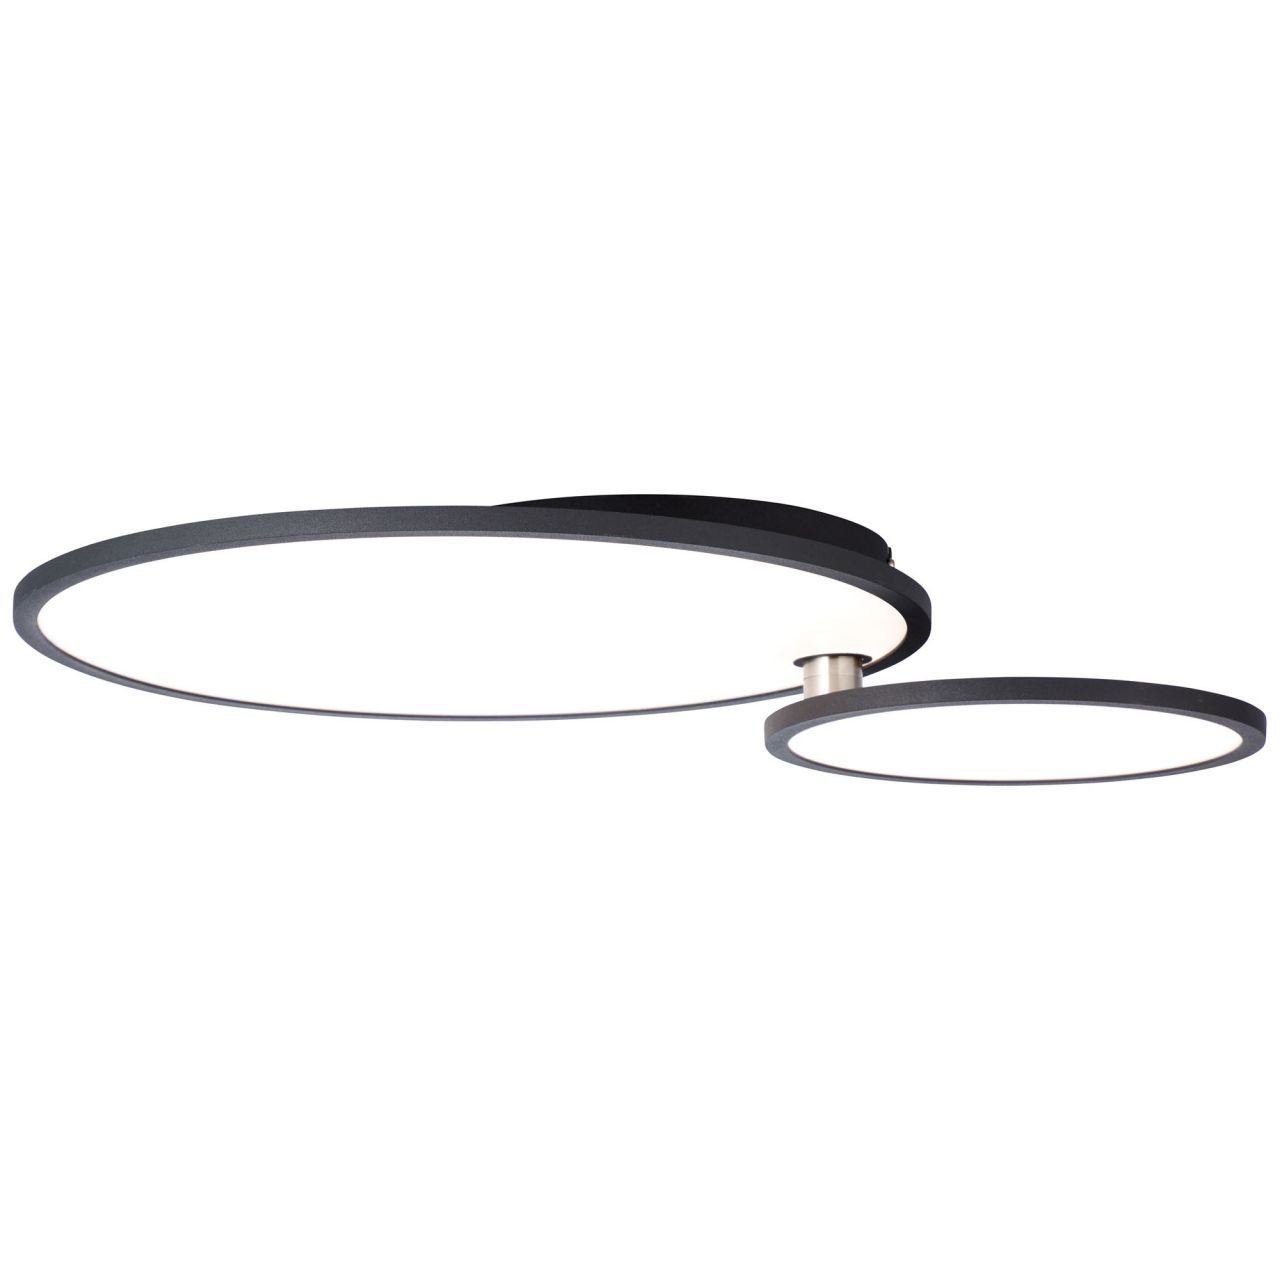 Bility Aufbauleuchte LED schwarz/weiß Deckenaufbau-Paneel 61x45cm 3000K, easyDim Brilliant Lampe Bility, 1x